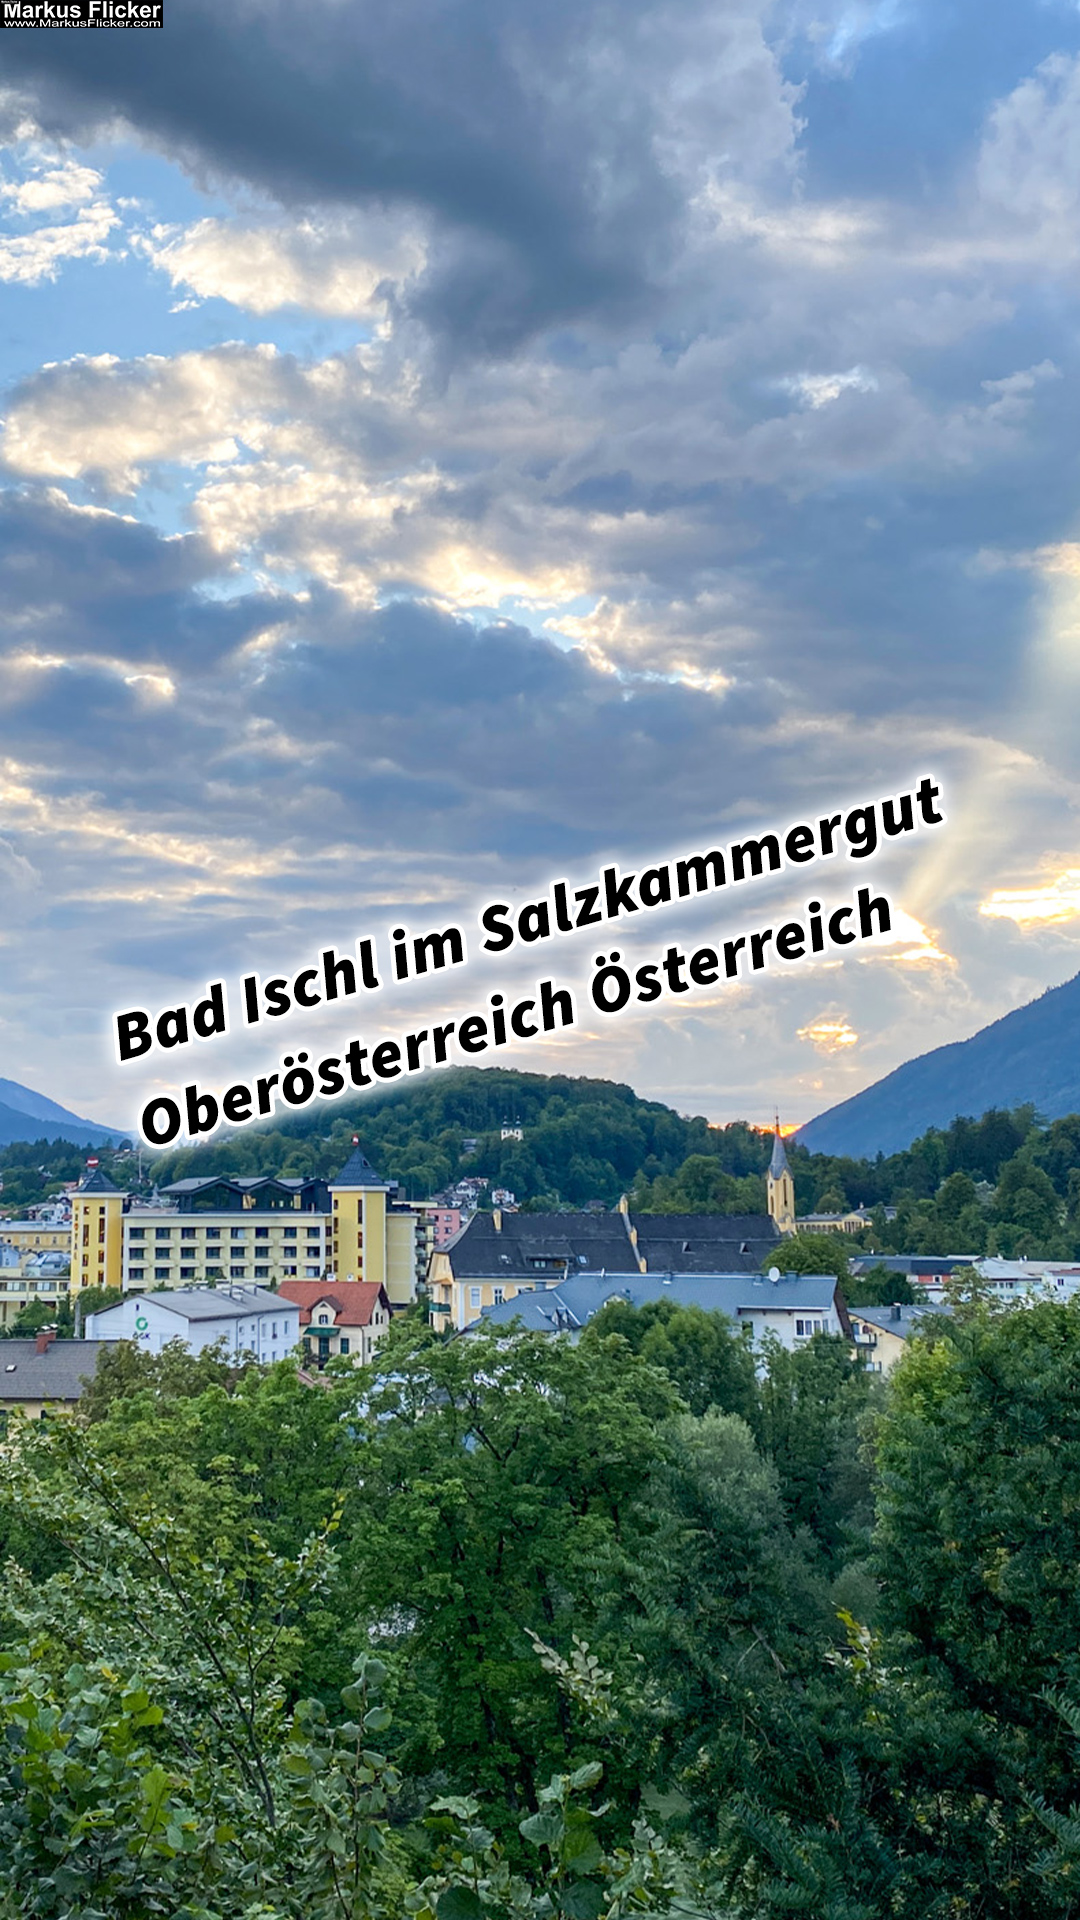 Bad Ischl im Salzkammergut Oberösterreich Österreich #sommerfrische #visitsalzkammergut #bergeseen